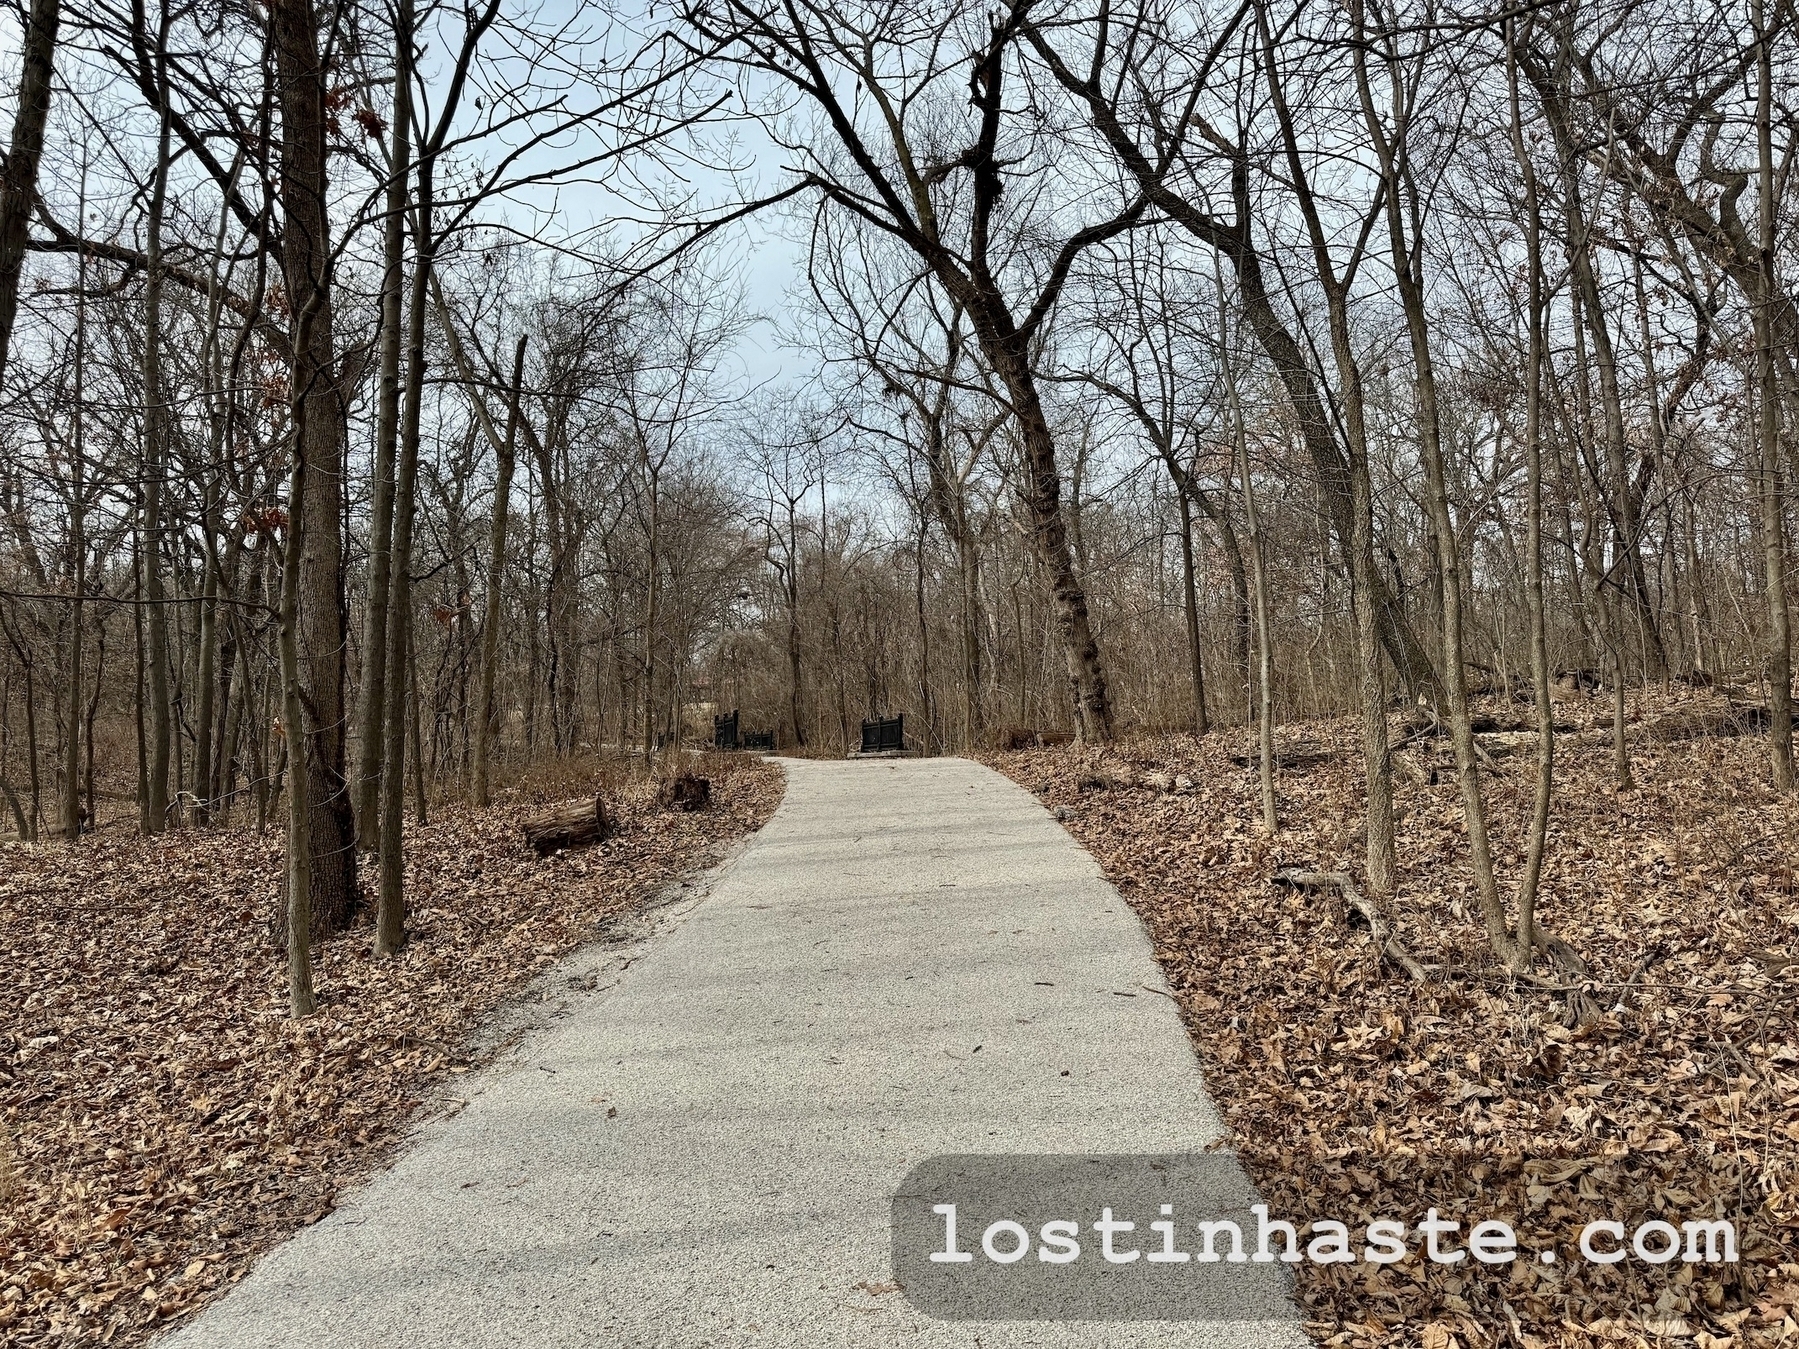 A winding concrete path leads through a barren, leaf-strewn woodland.